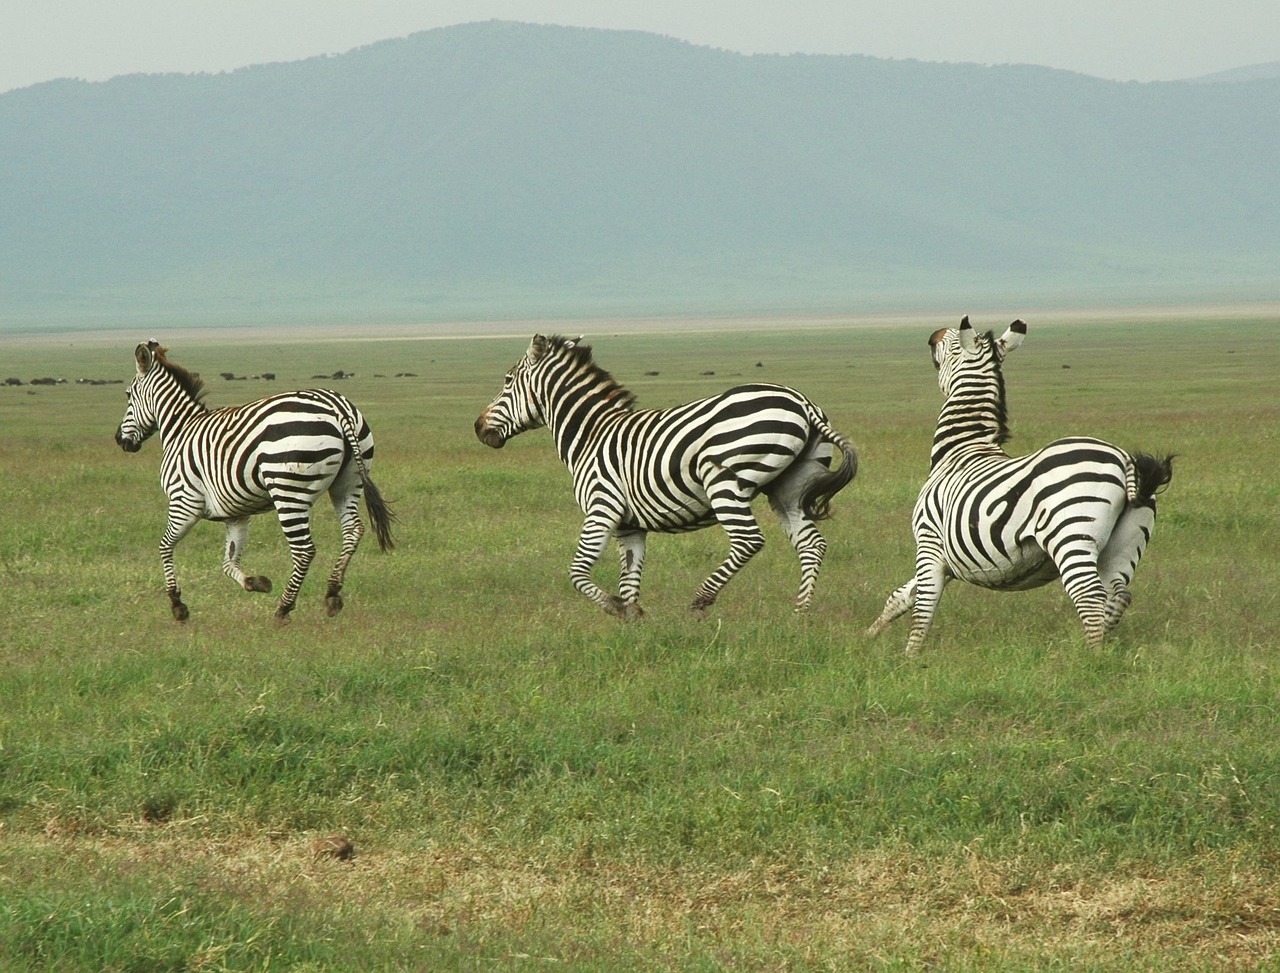 3 Zebras walking on a grass field